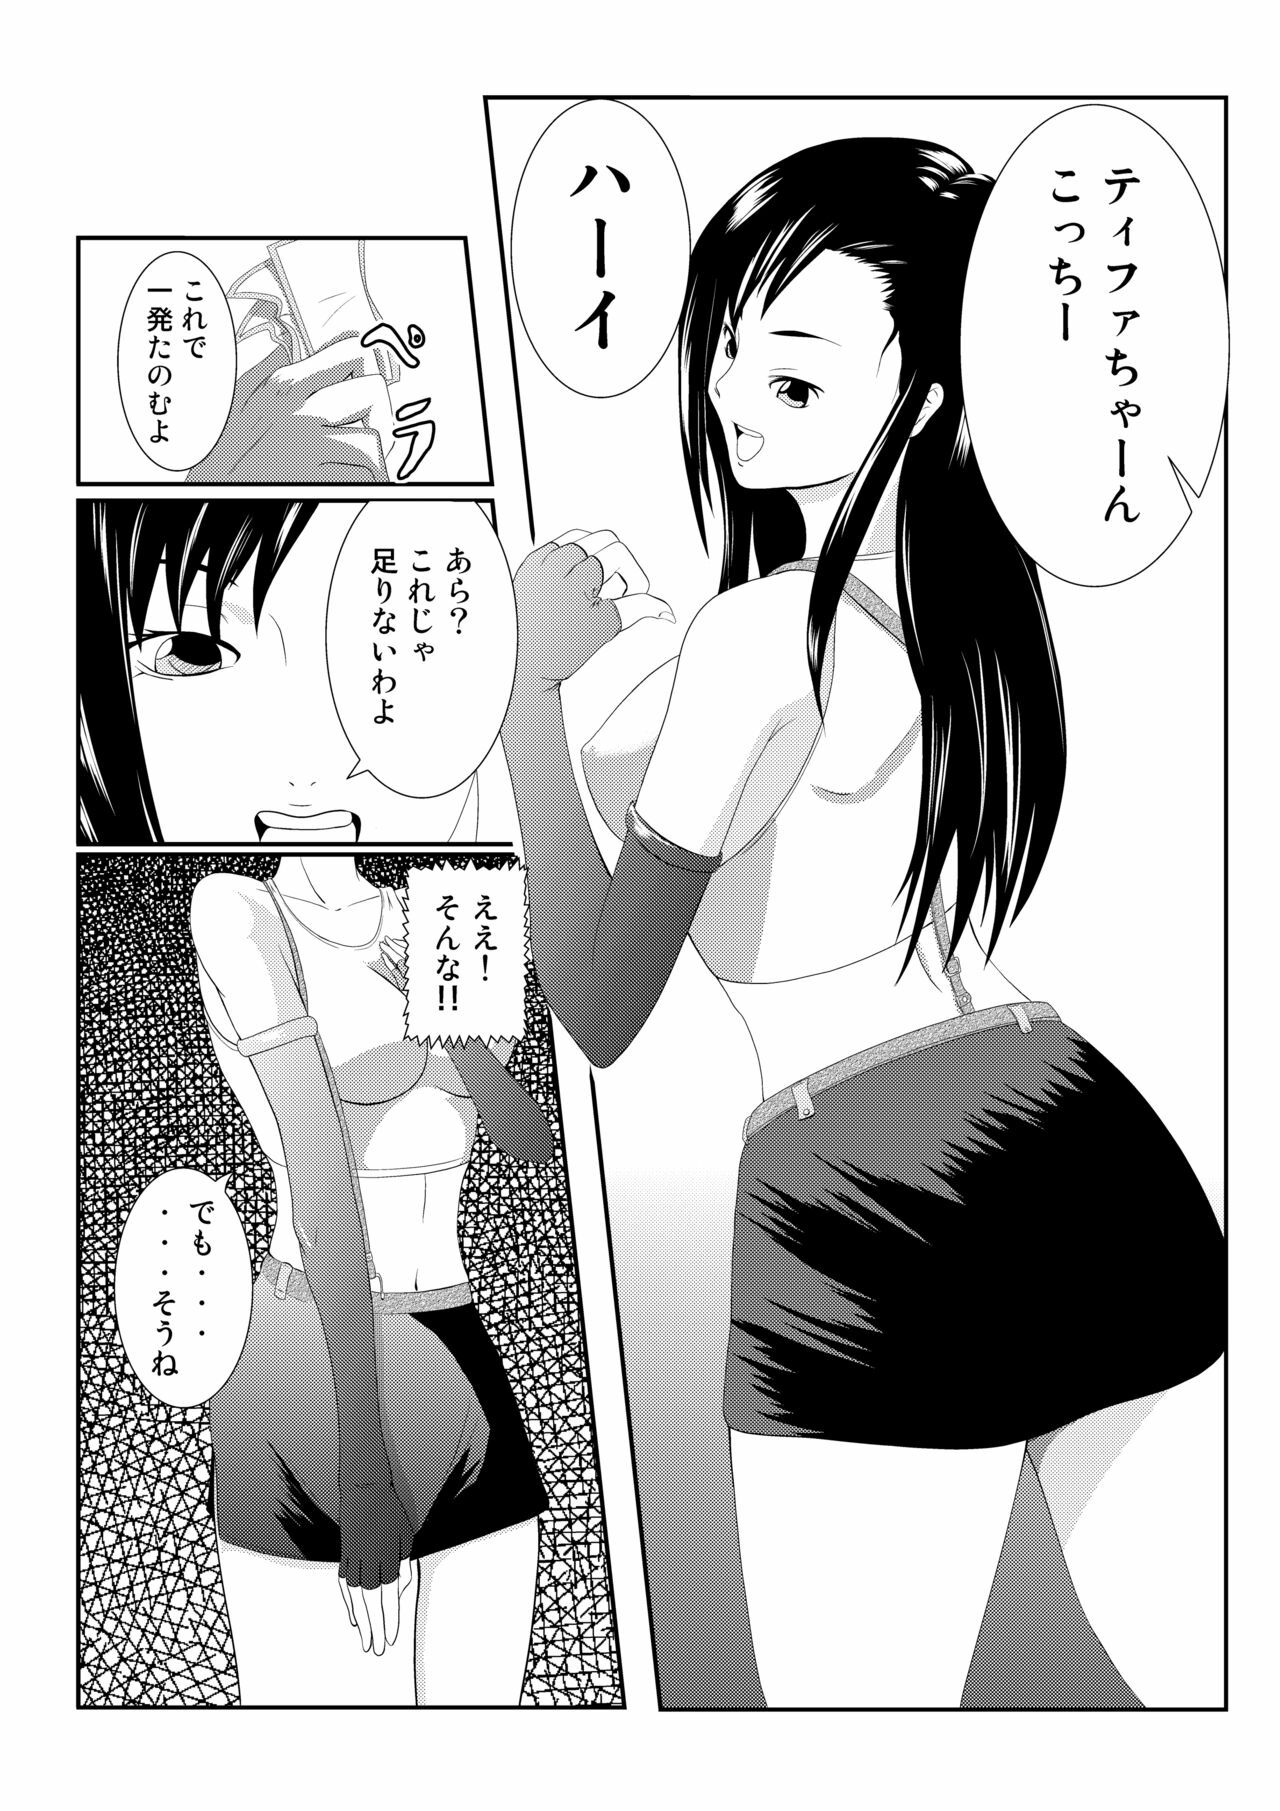 [Ouhoushi] Nomiya no Tifa-san - Tifa's Bar (Final Fantasy VII) page 3 full